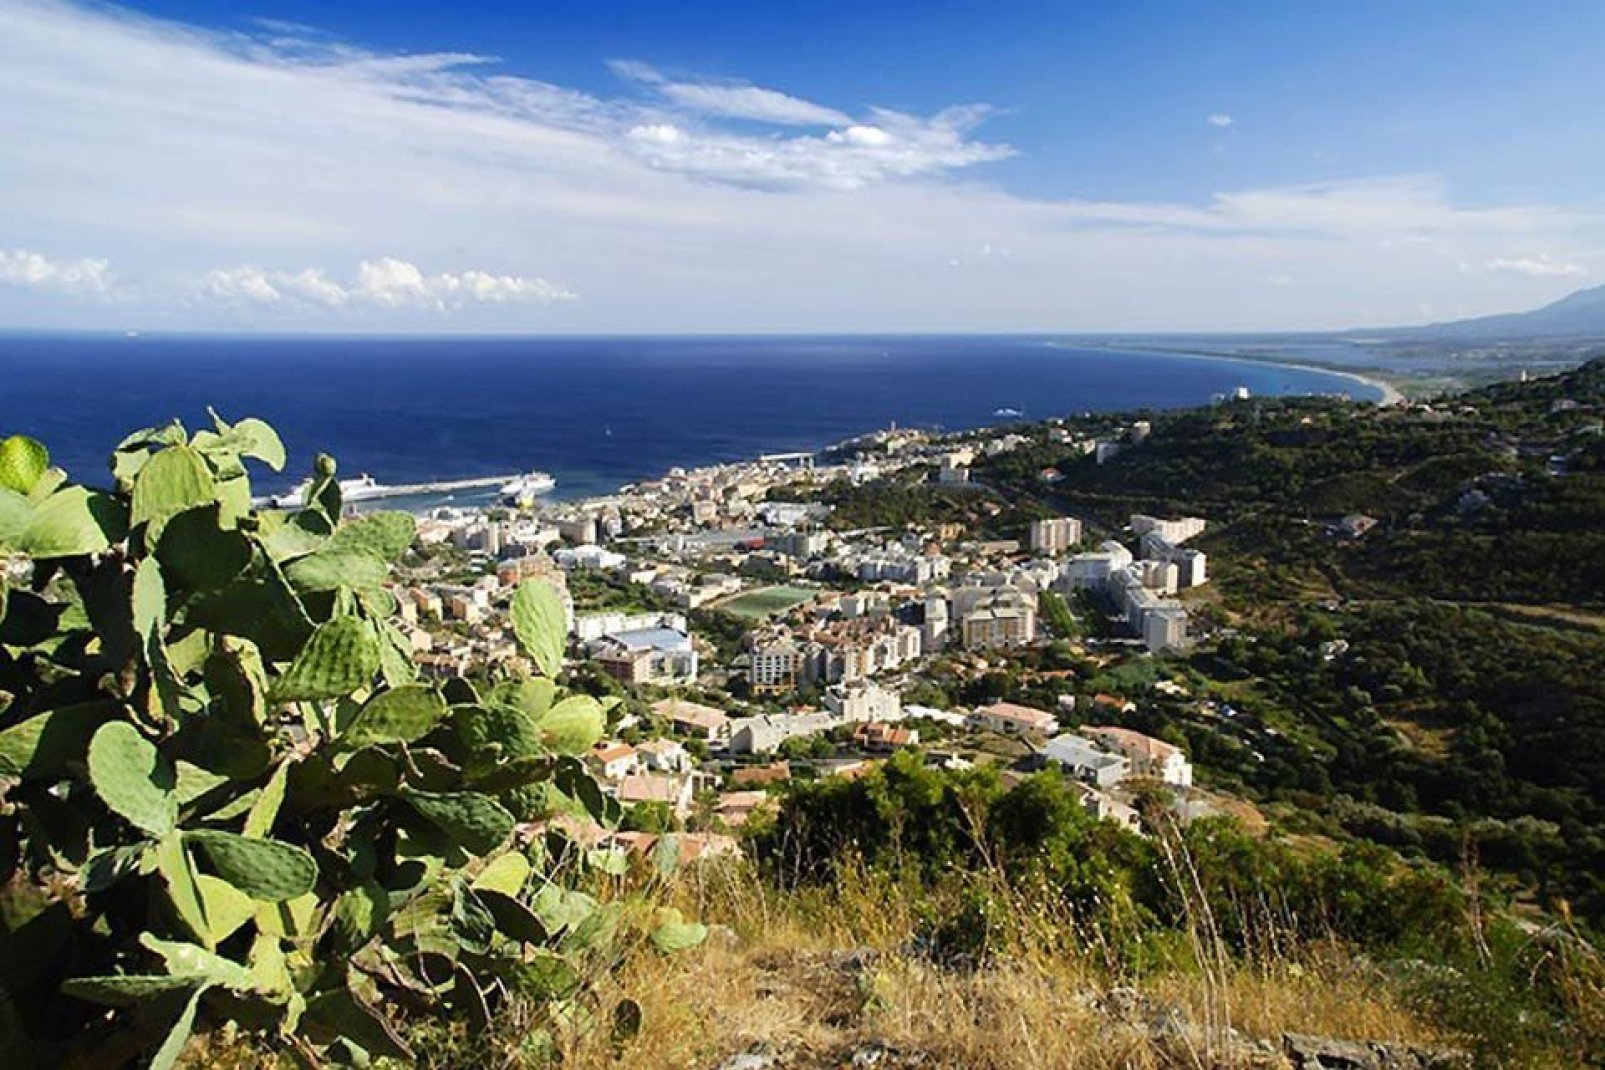 La ville basse de Bastia s'étend le long de la côte. On y retrouve le port méditerranéen et les ruelles pittoresques.